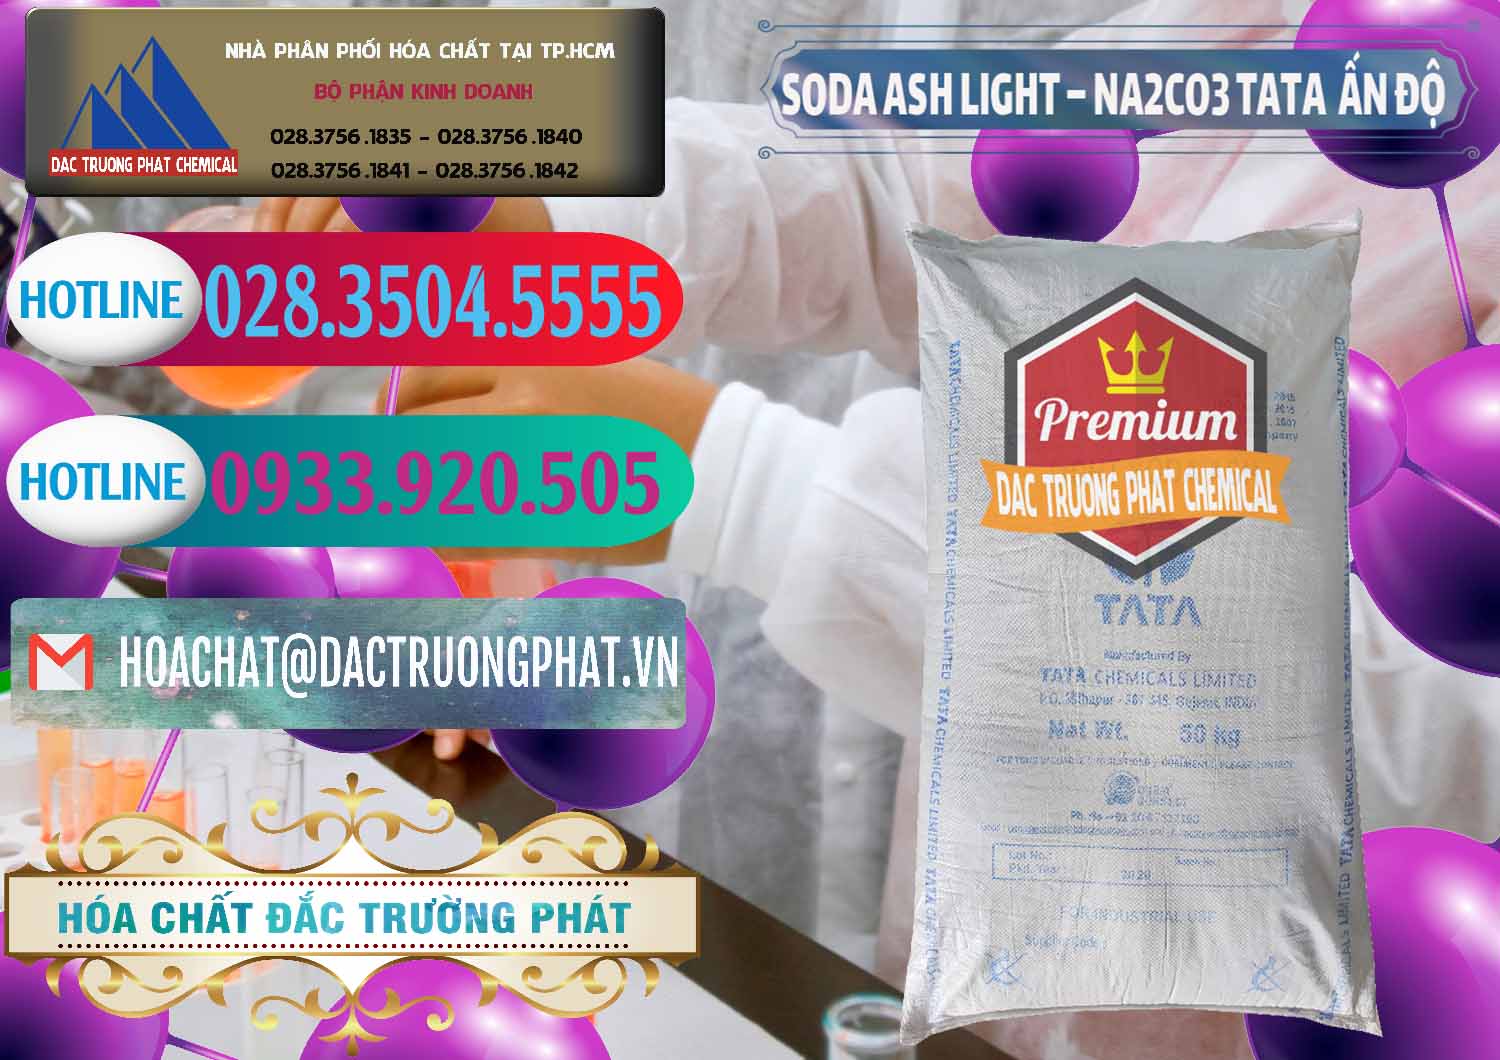 Cty cung cấp và bán Soda Ash Light - NA2CO3 TATA Ấn Độ India - 0132 - Chuyên cung cấp & phân phối hóa chất tại TP.HCM - truongphat.vn